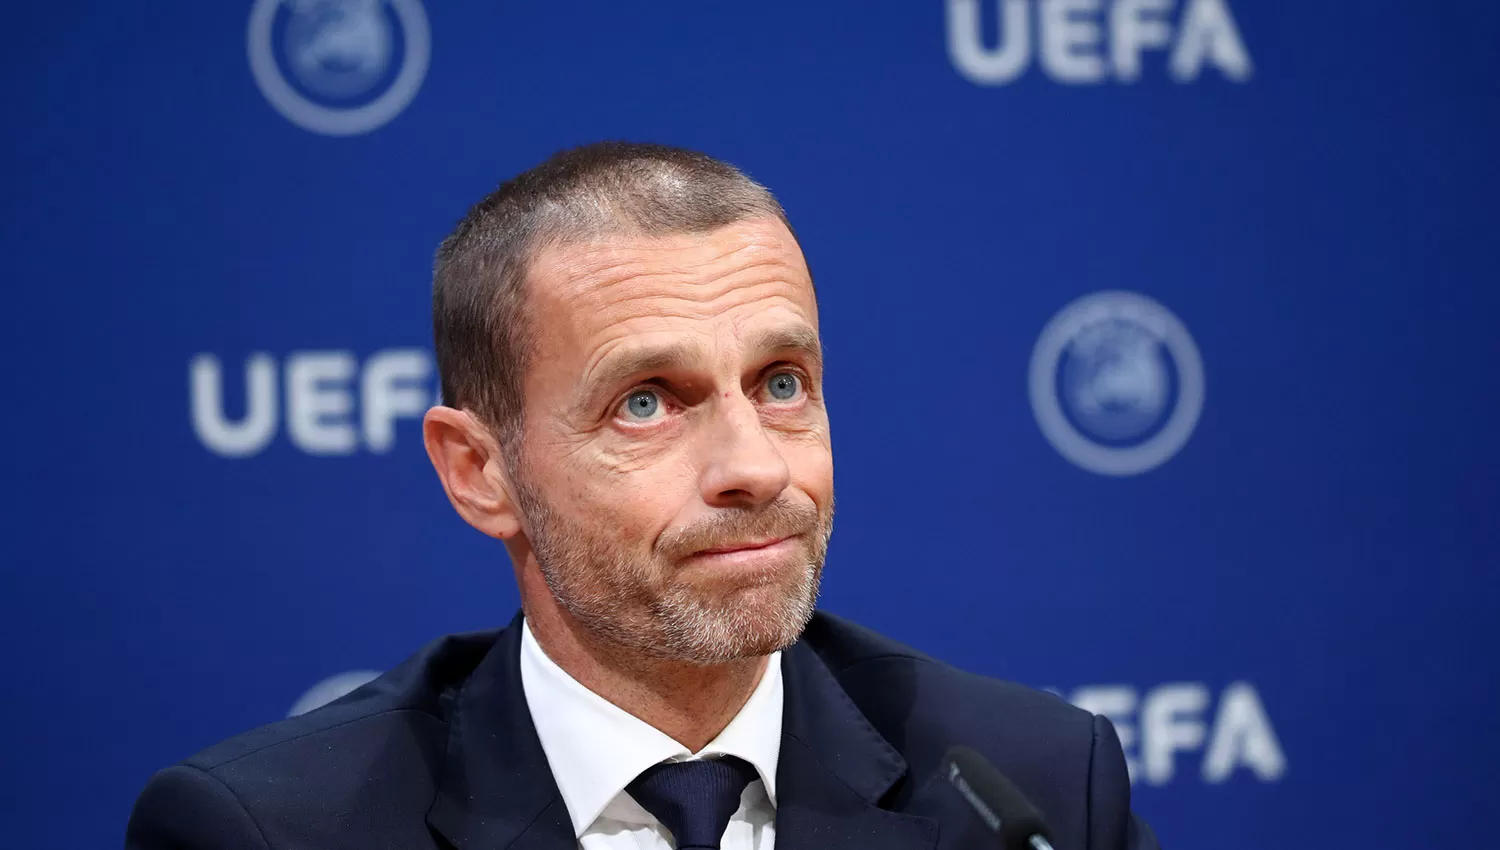 Al igual que Gianni Infantino, el titular de la UEFA Aleksandr Ceferin se mostró decepcionado con el VAR.